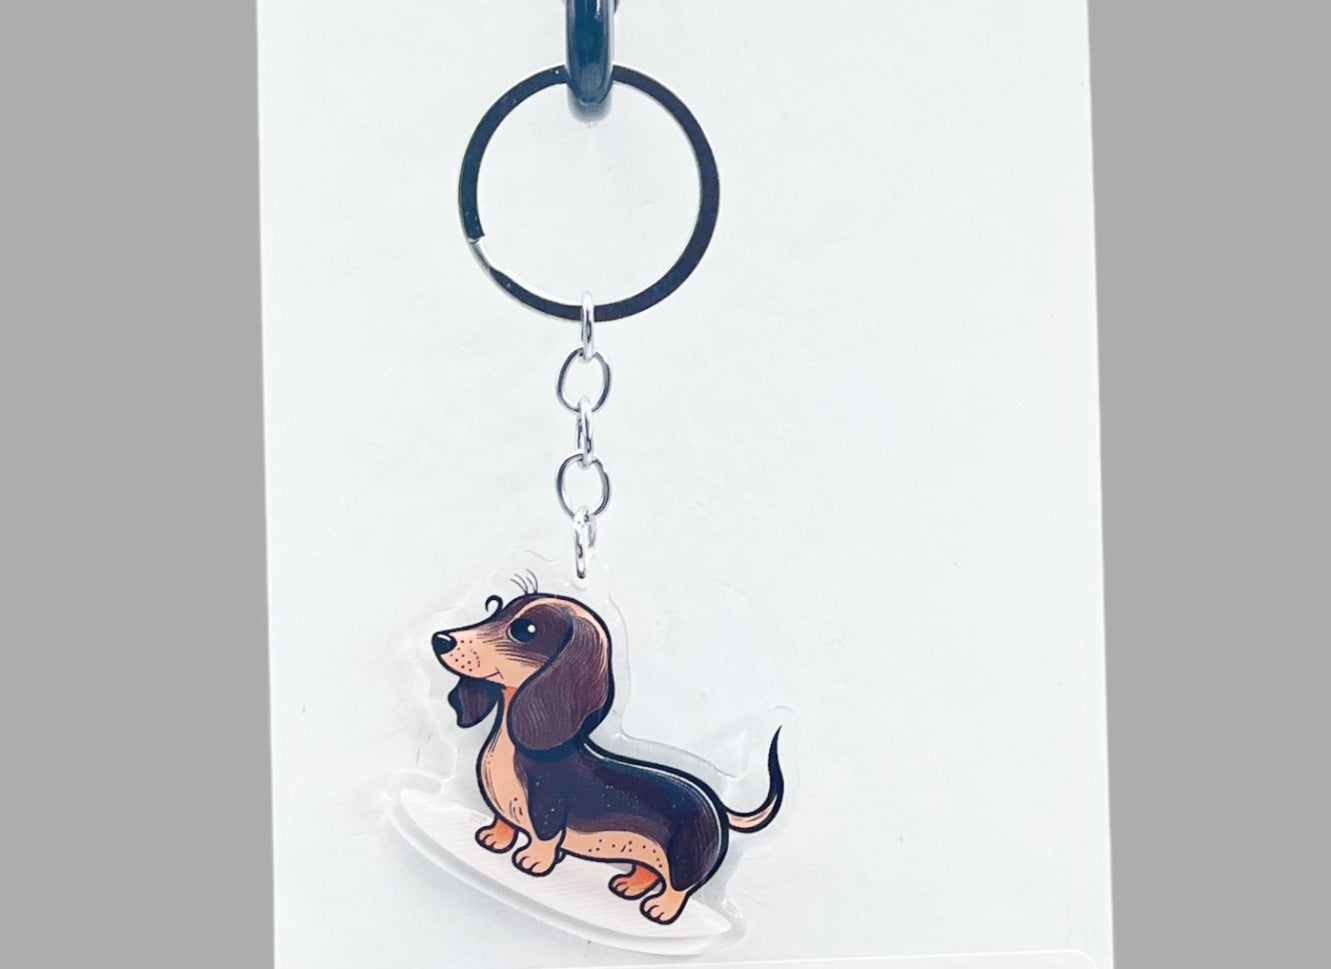 Dachshund Dog Acrylic Keychain